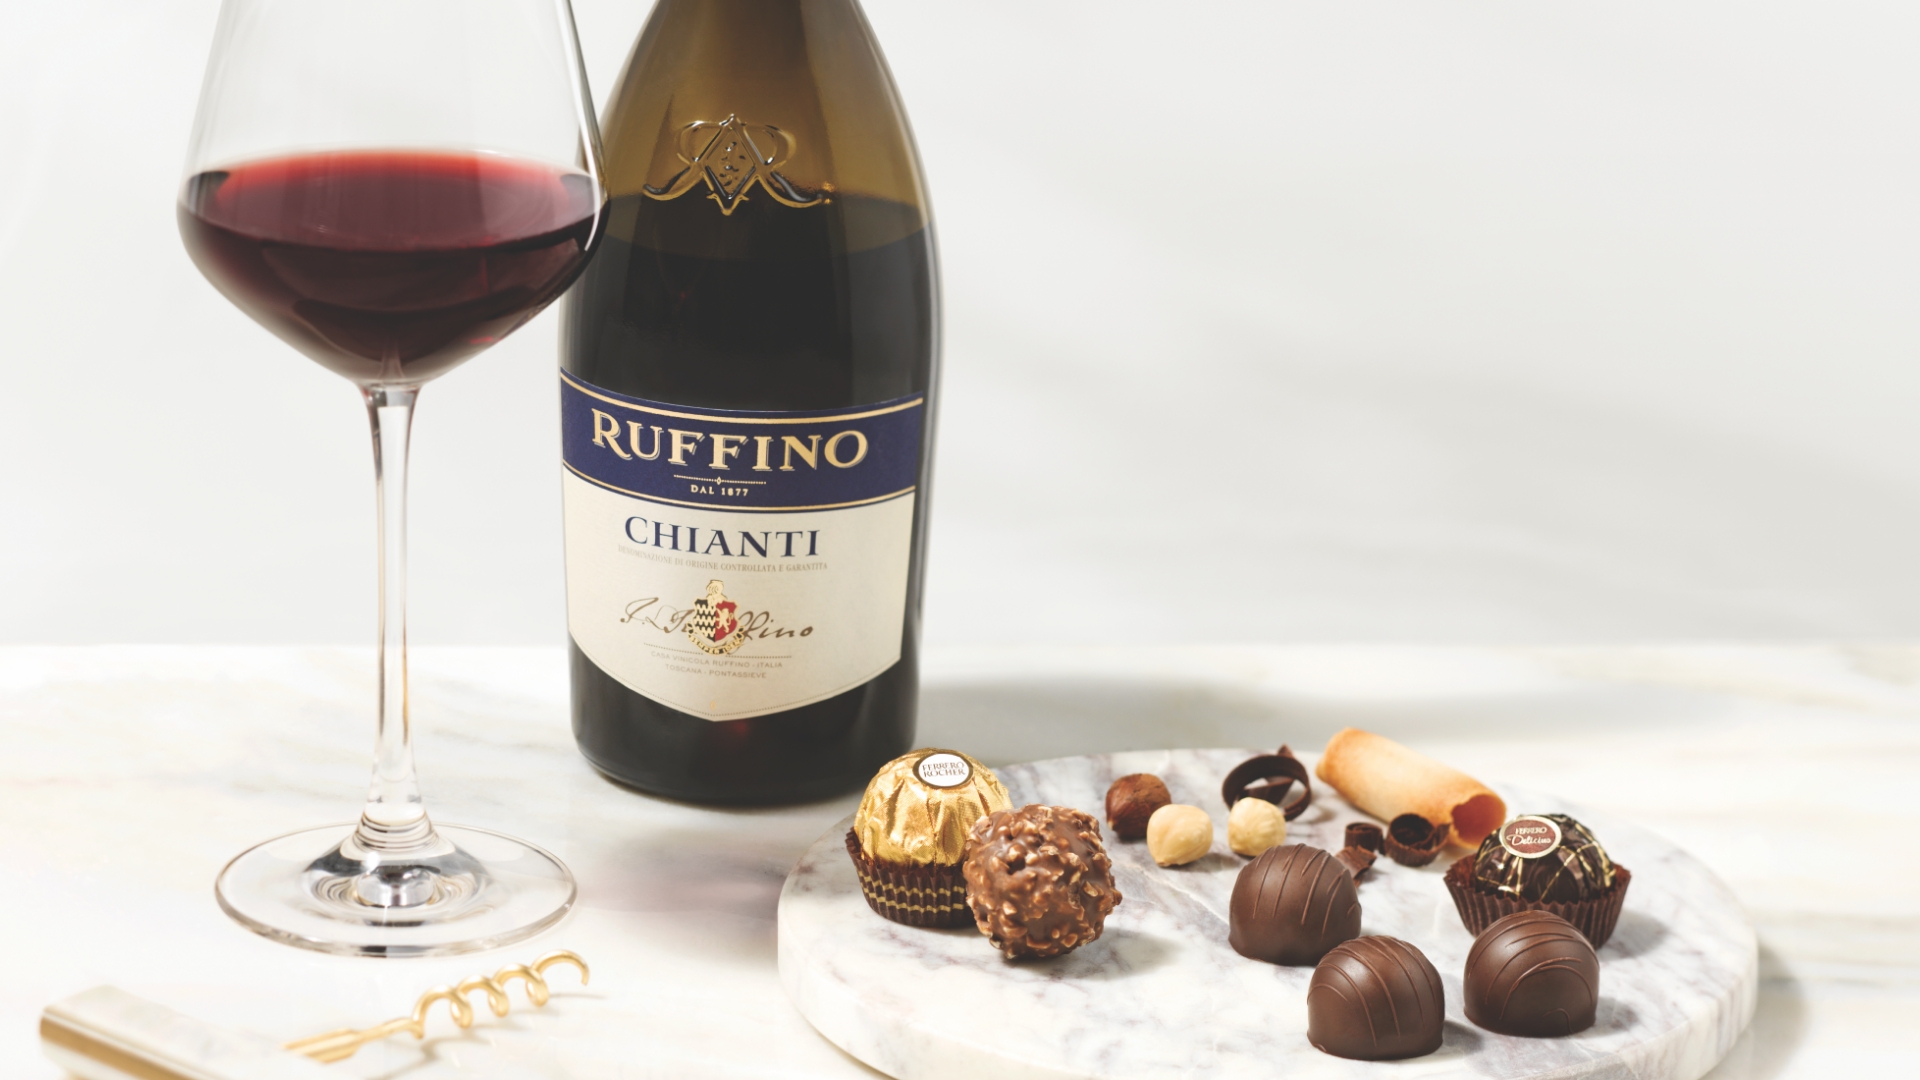 Ruffino wine and Ferrero chocolates